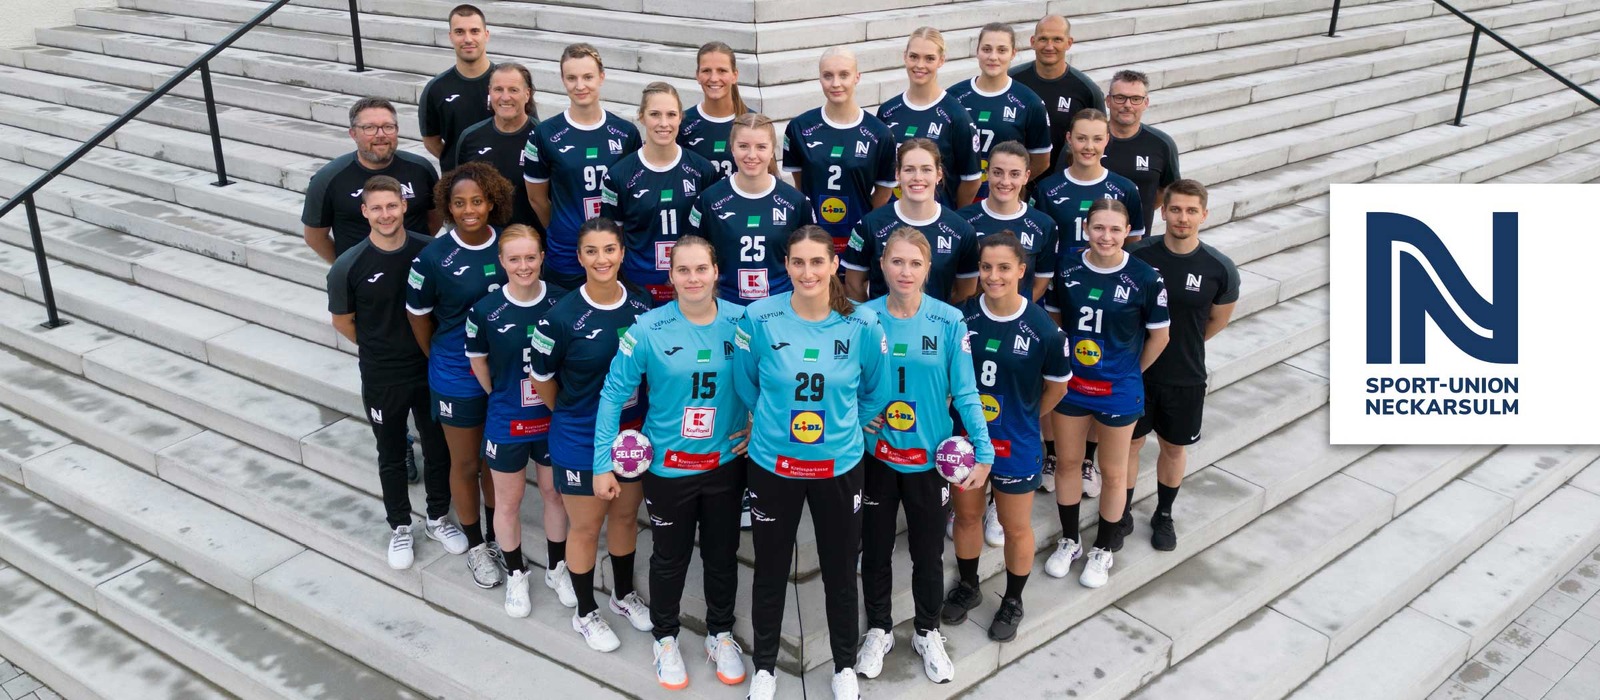 Heimspiel der Sport-Union Neckarsulm -  Handball Bundesliga Damen